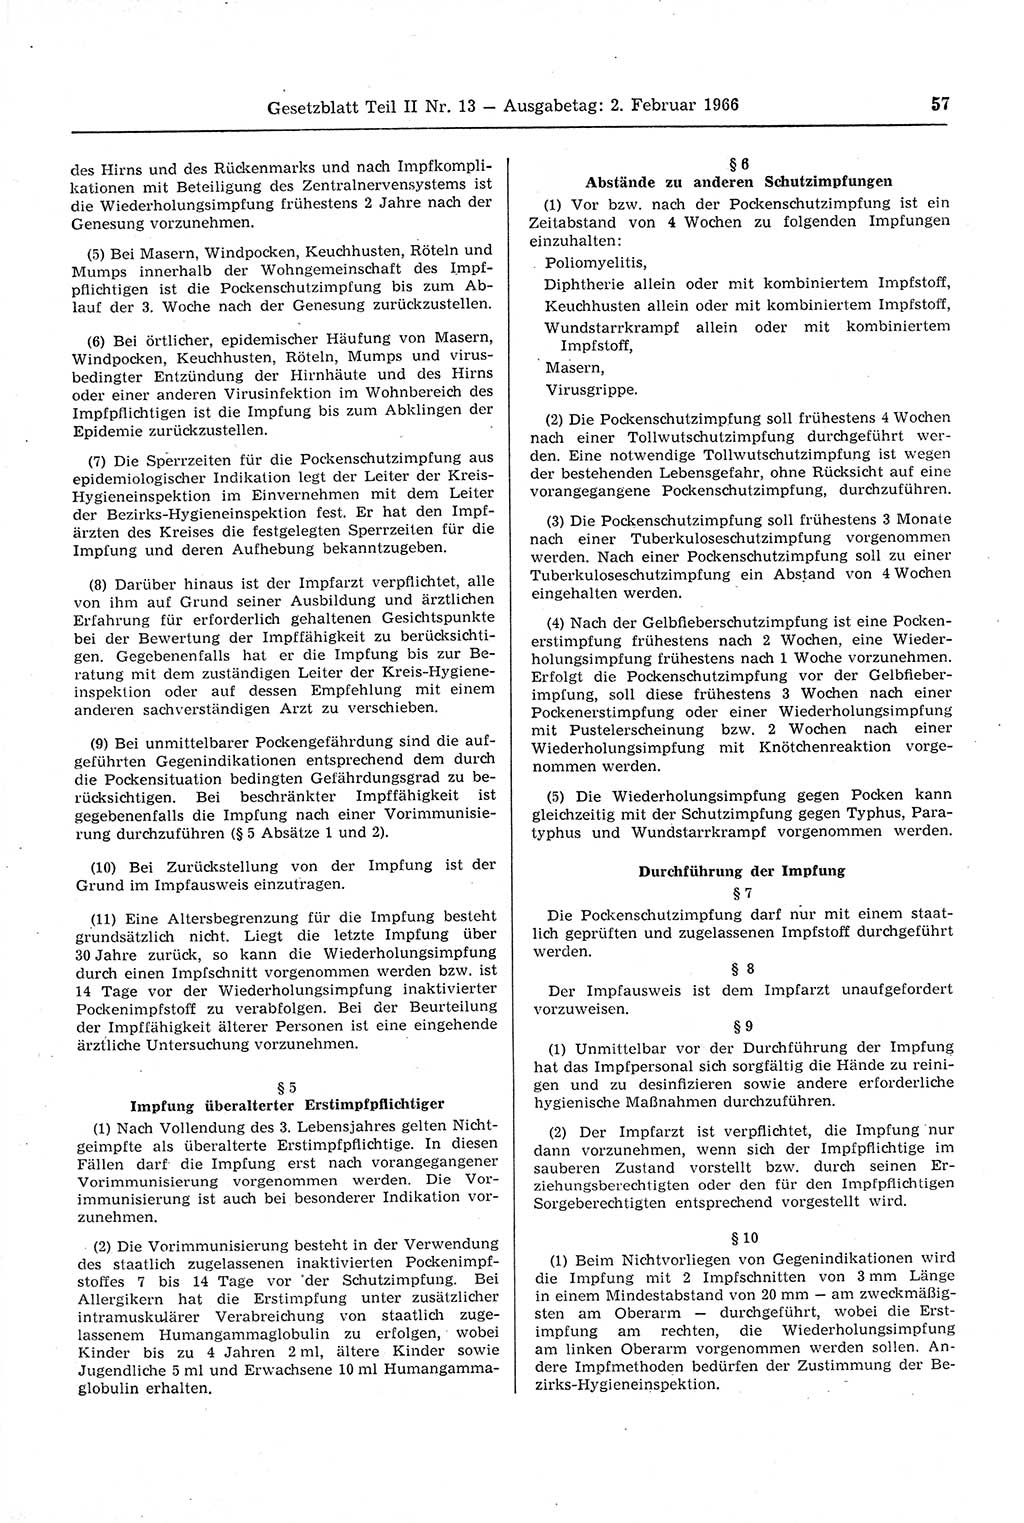 Gesetzblatt (GBl.) der Deutschen Demokratischen Republik (DDR) Teil ⅠⅠ 1966, Seite 57 (GBl. DDR ⅠⅠ 1966, S. 57)